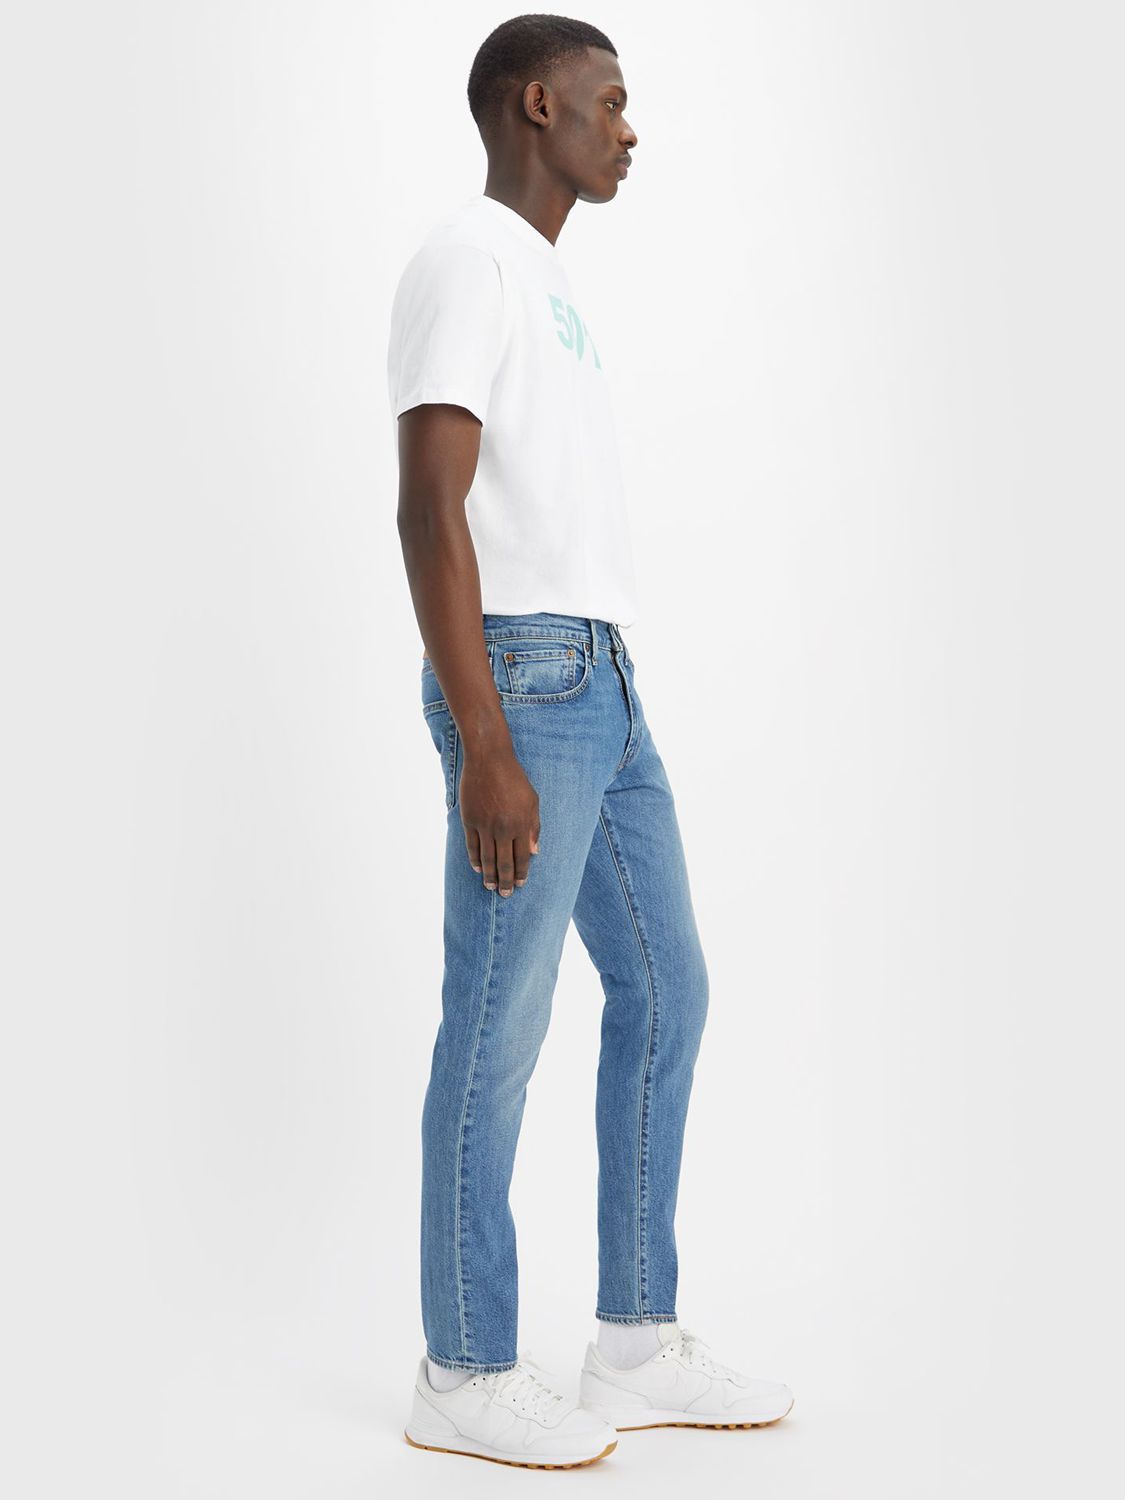 Levi's 512 Slim Tapered Jeans, Z7016  Indigo, 32R